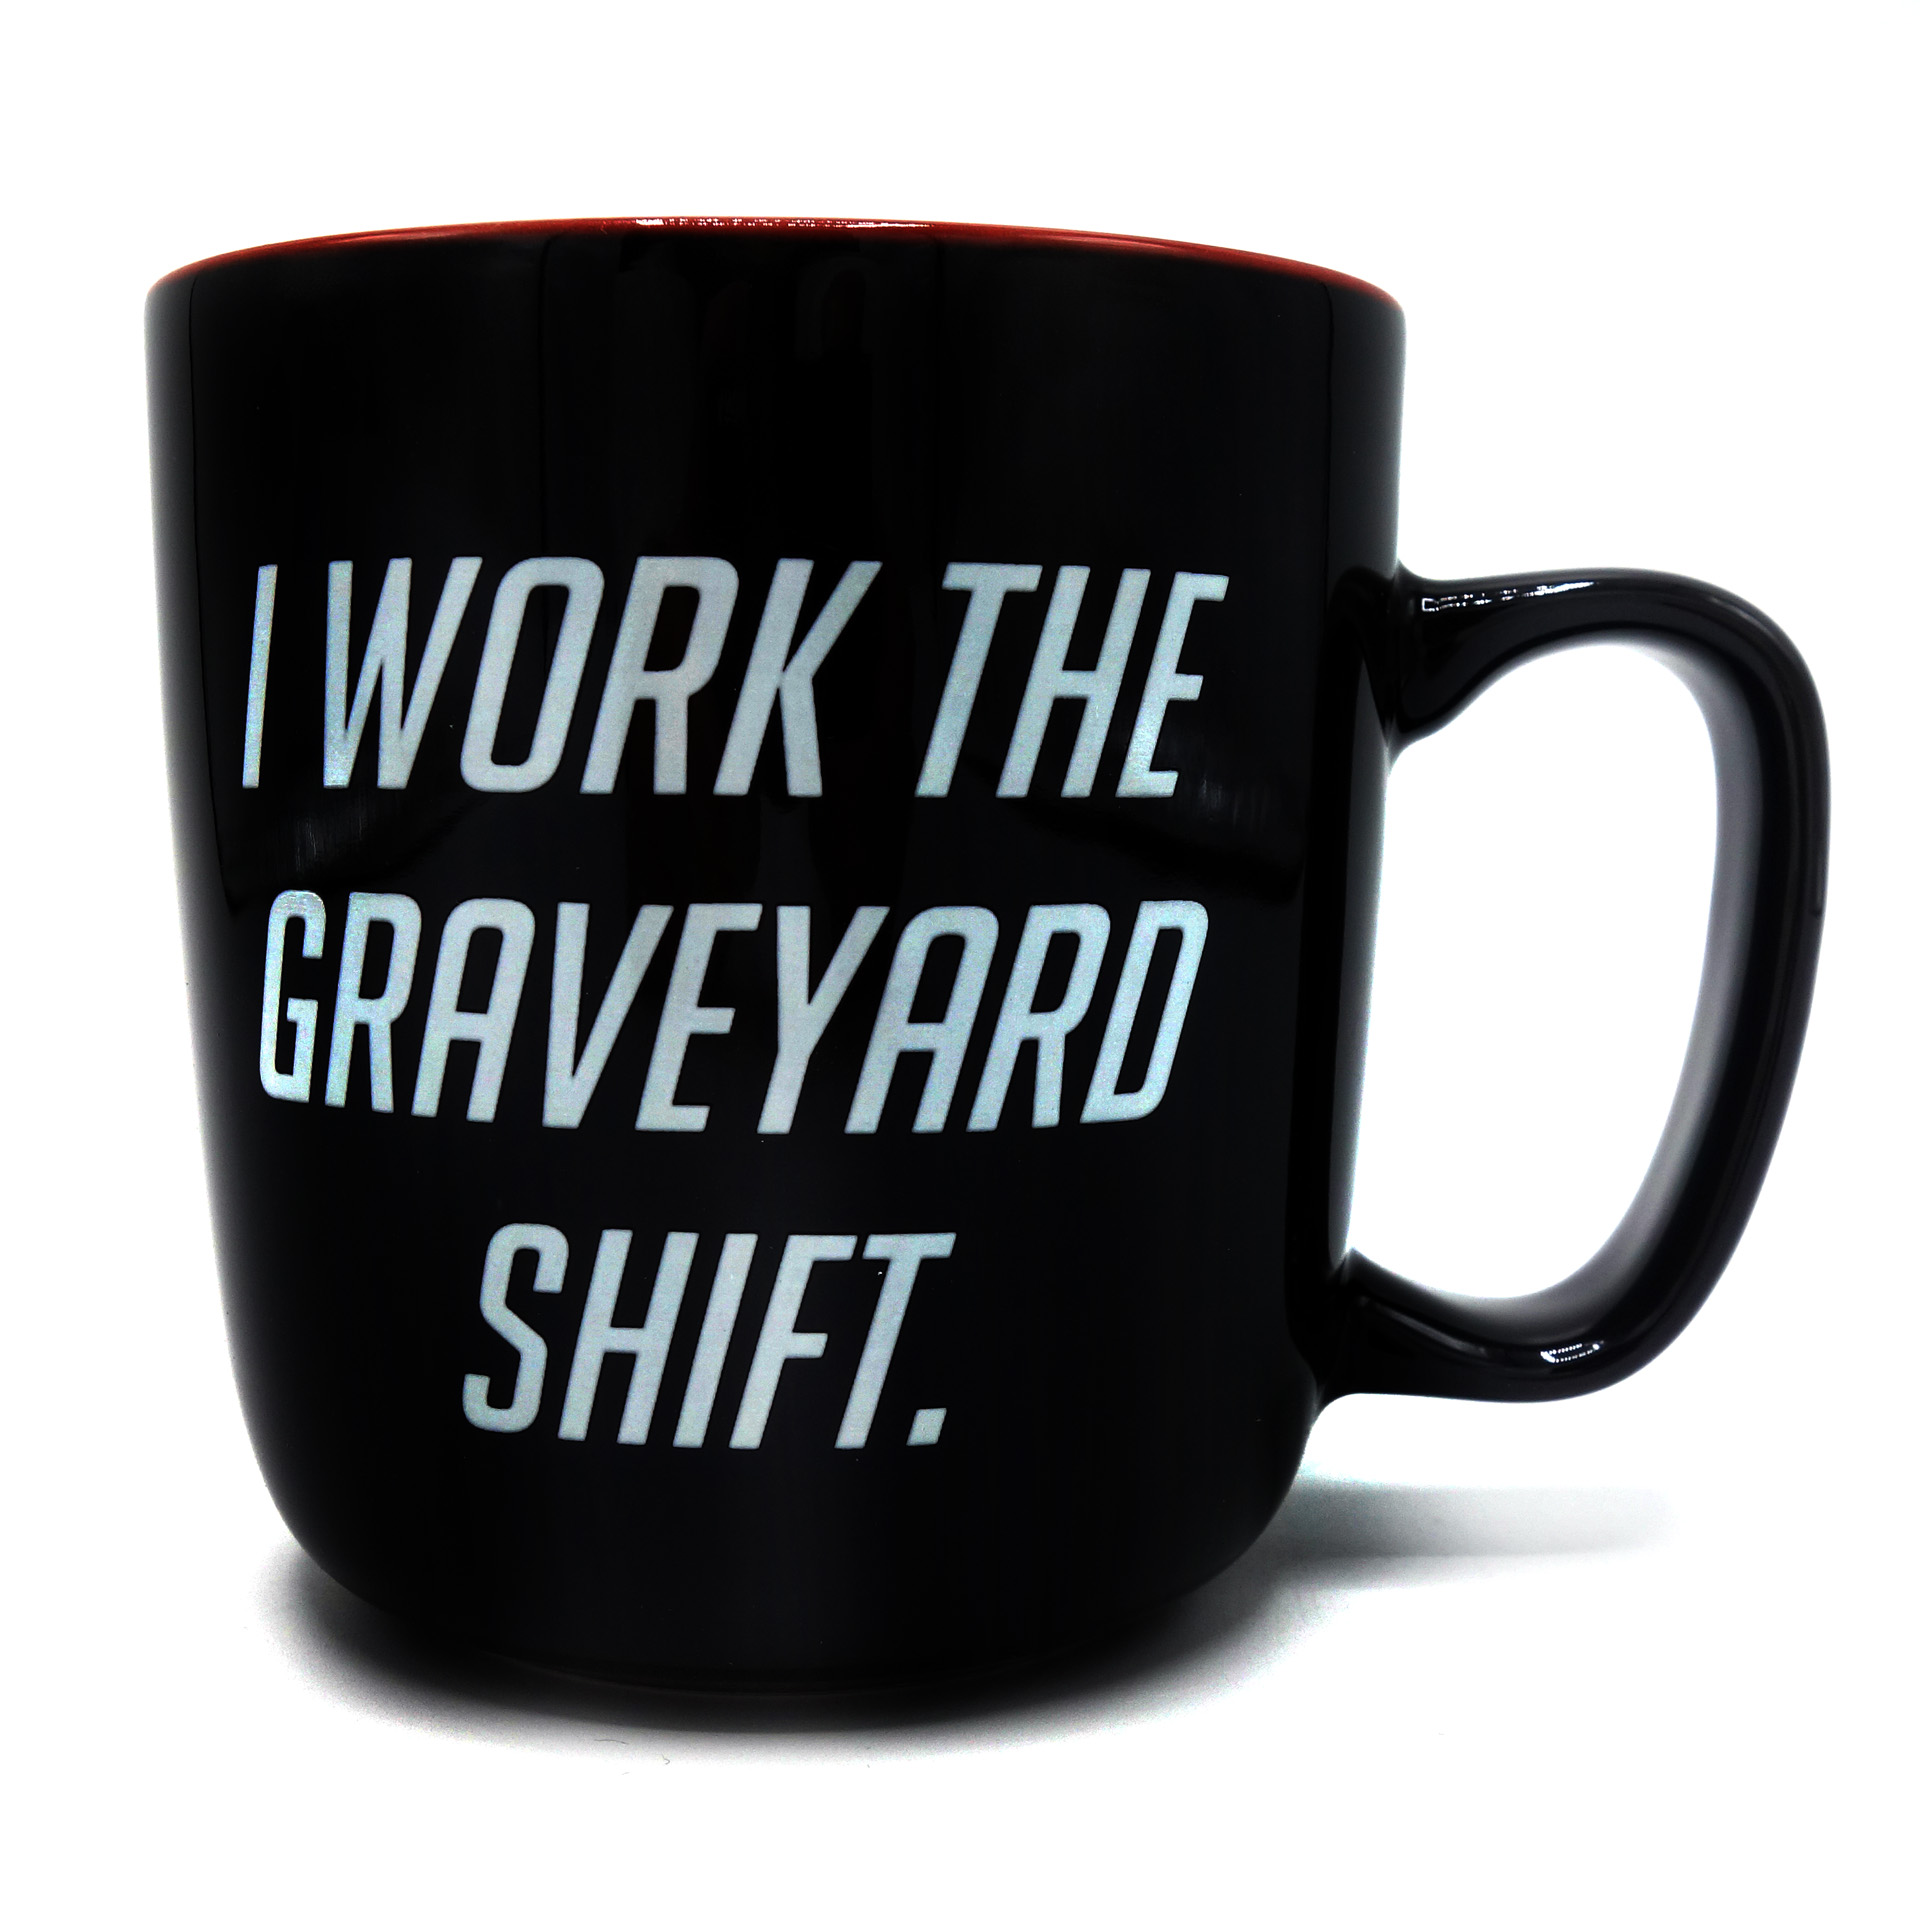 Neue Overwatch Tasse "I work the graveyard shift"